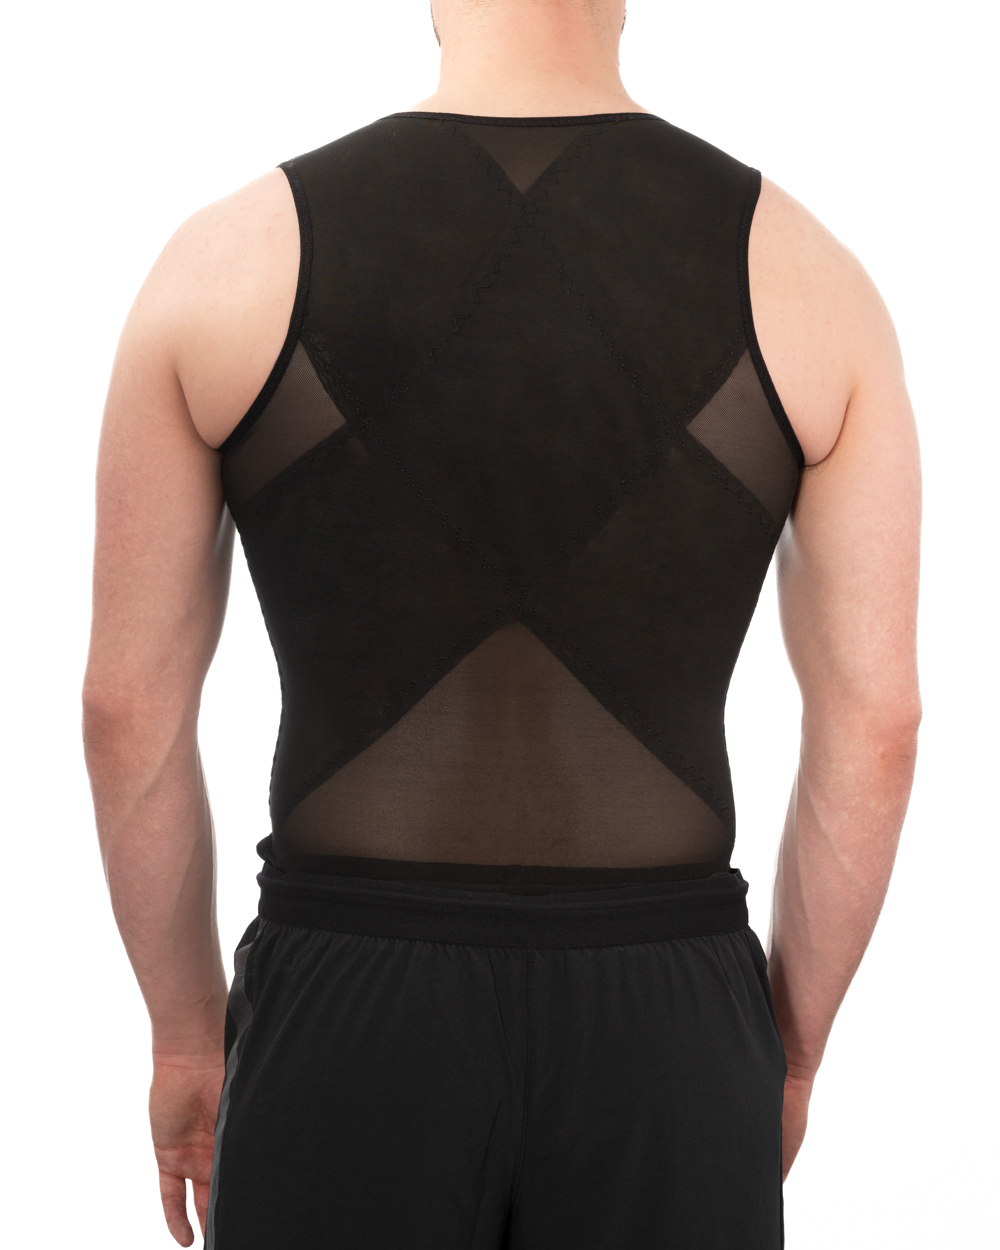 Mansottile Ion Shaping Vest, Gynecomastia Compression Vest, Mansottile  Shaping Vest For Men